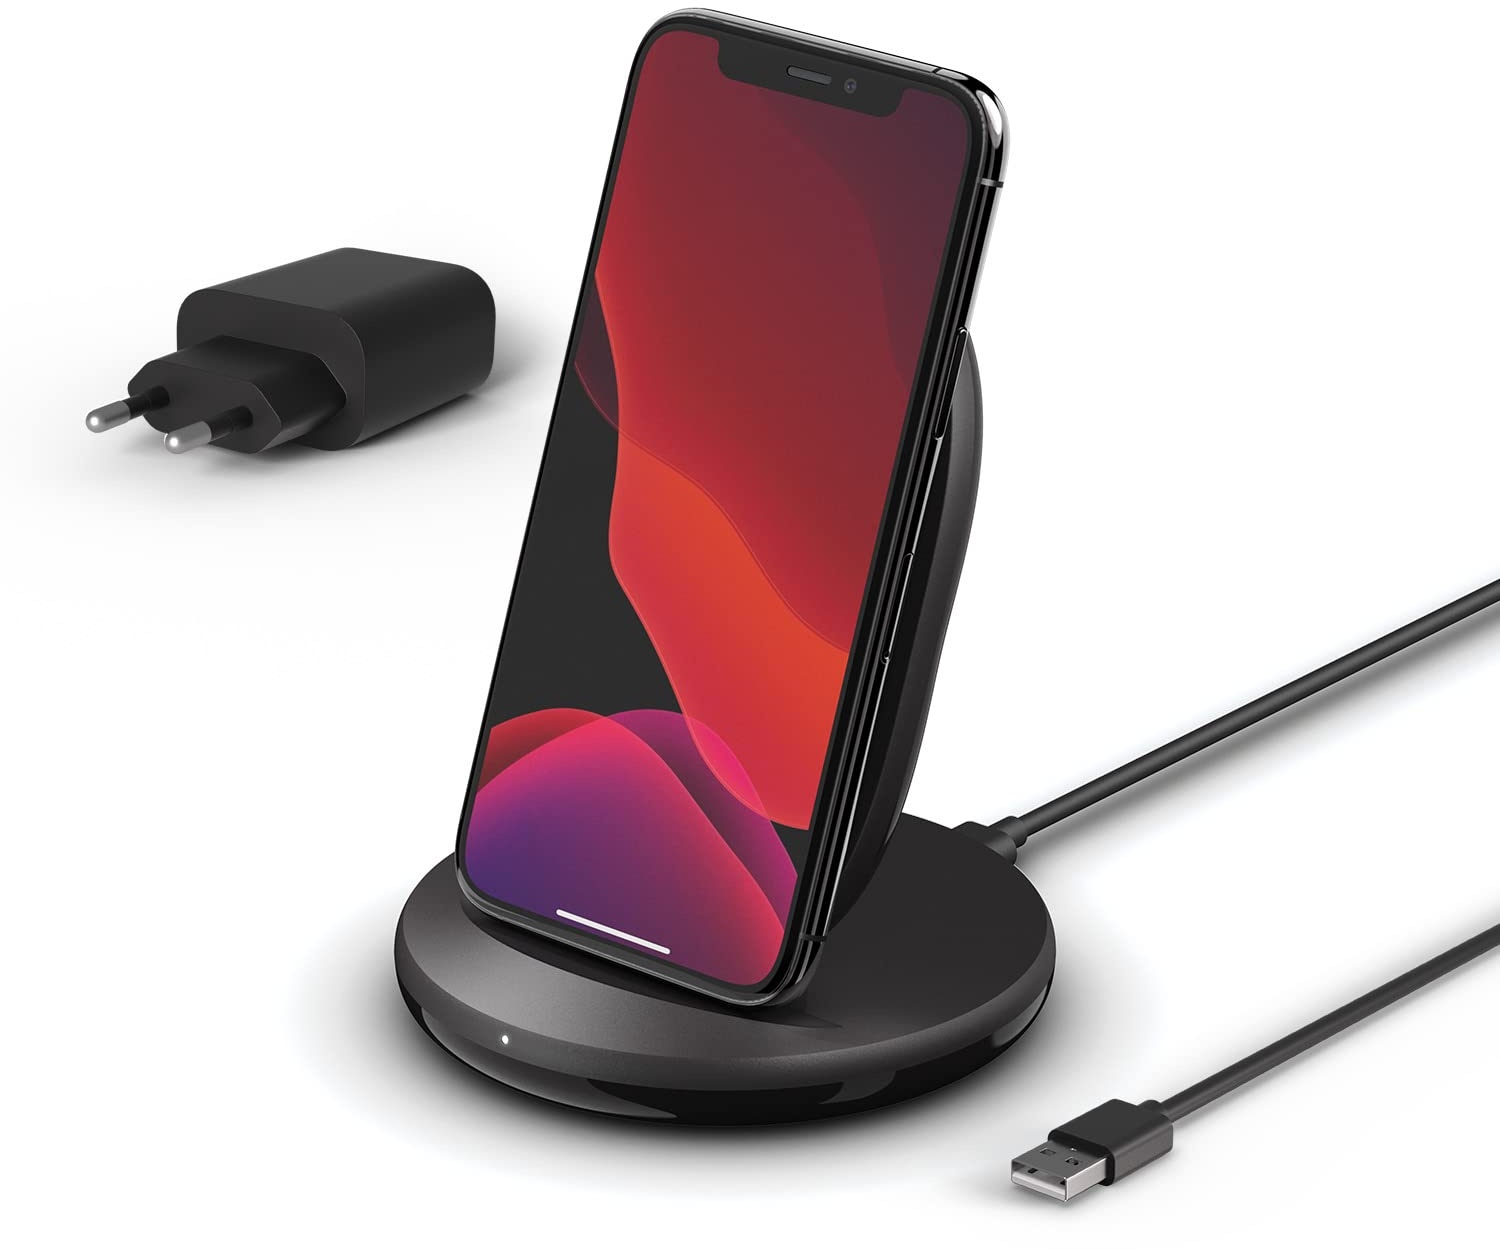 Belkin BoostCharge drahtloser Ladeständer, 15 W (Qi-Ladeständer zum schnellen drahtlosen Laden für Geräte wie iPhone, Samsung, Pixel) - Schwarz